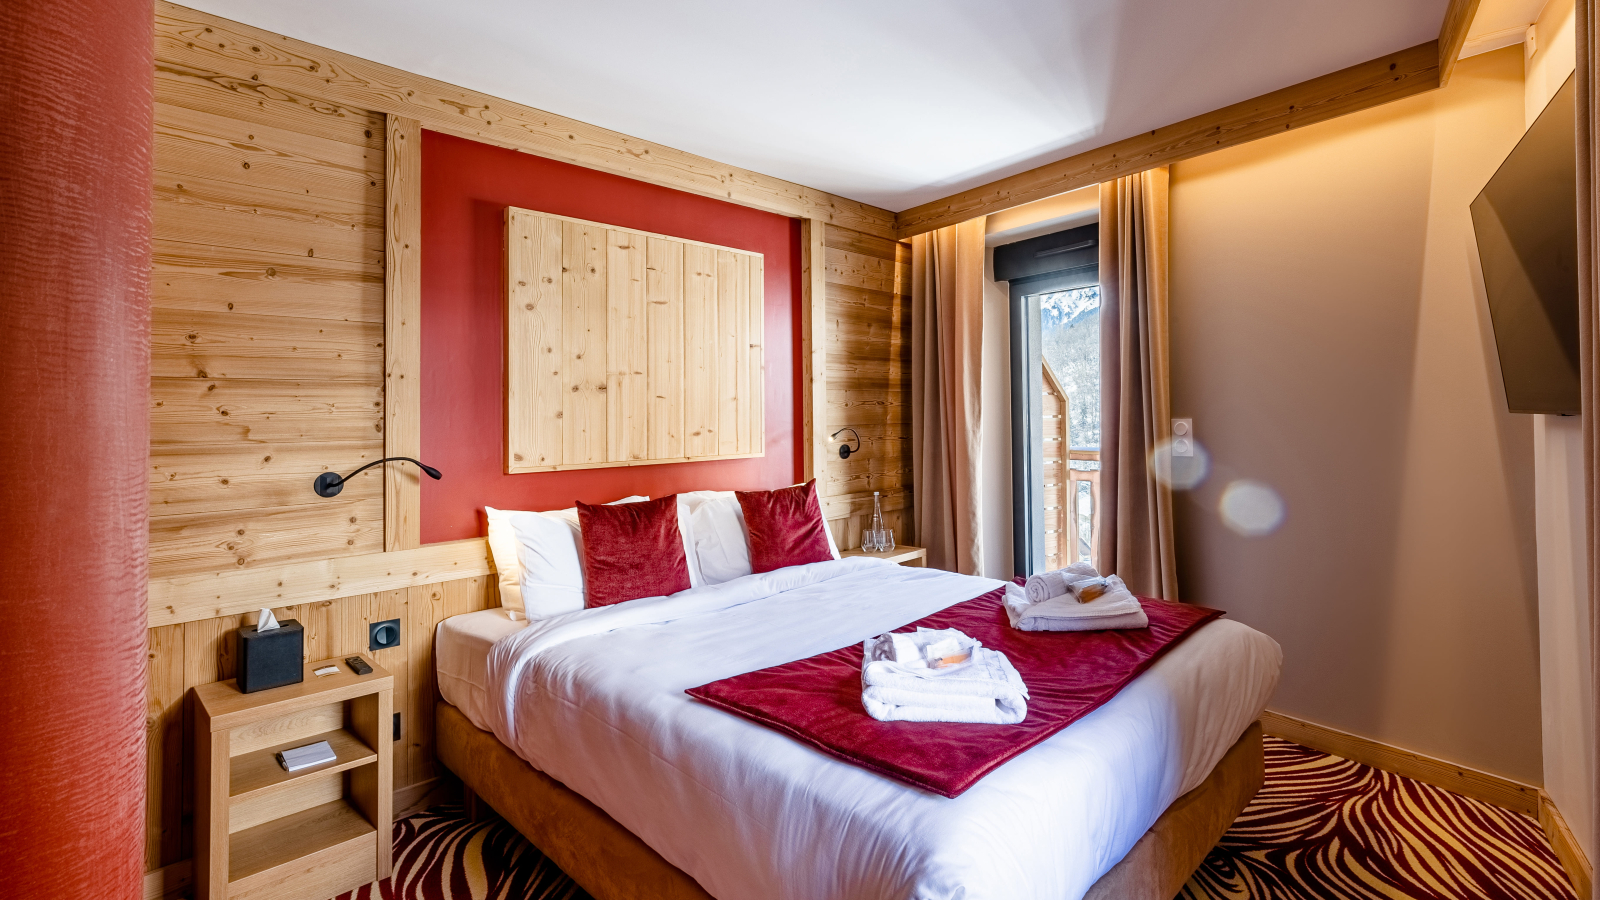 Chambre avec bois au mur et moquette rouge et beige, couvre-lit rouge velours